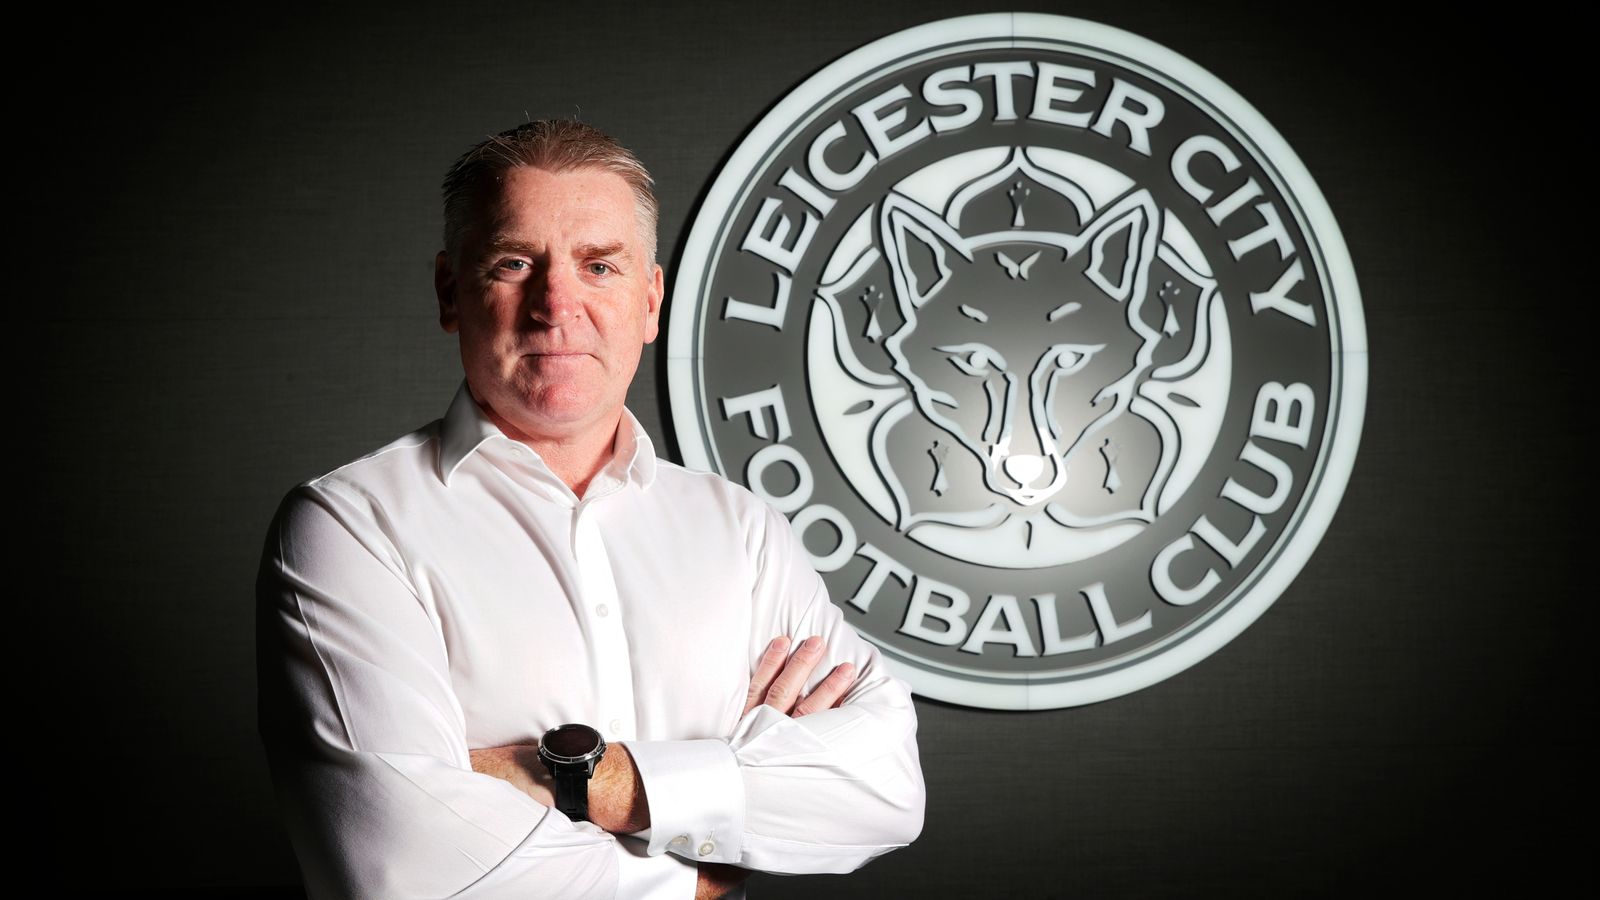 Entrevista exclusiva de Dean Smith: el jefe de Leicester City sobre los detalles defensivos de John Terry y el polvo de estrellas de James Maddison |  Noticias de futbol